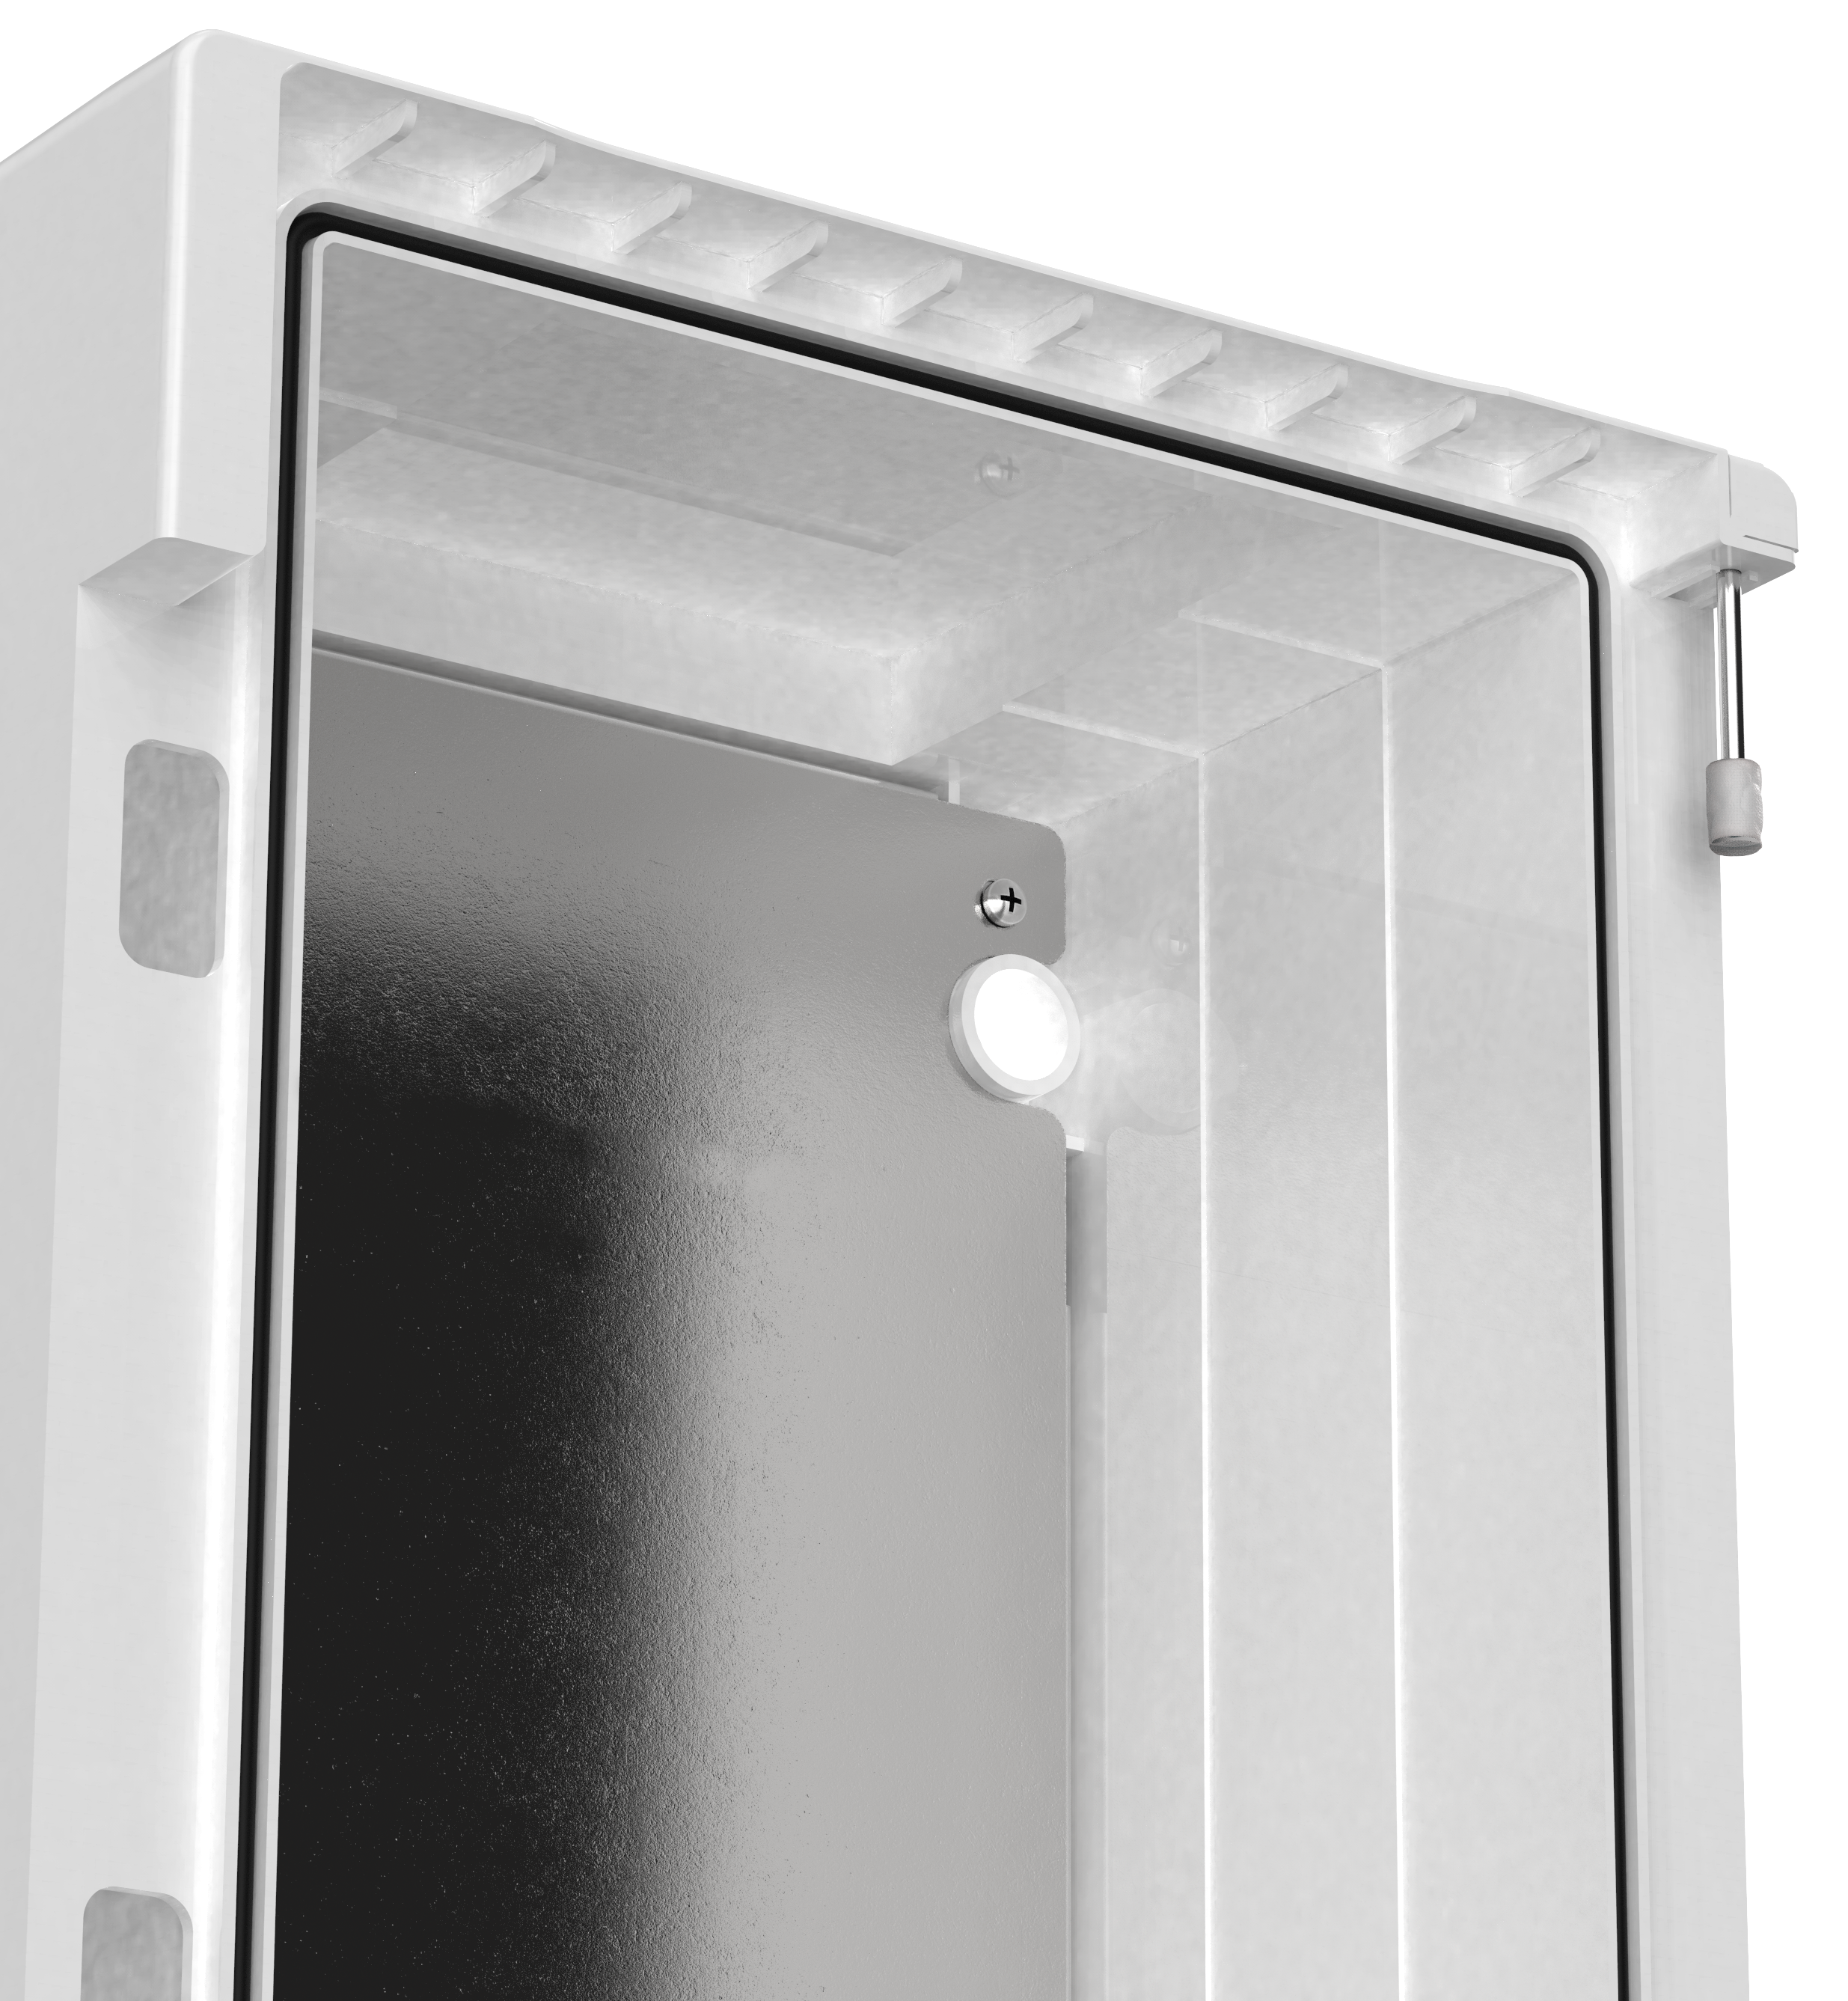 Полиуретановый уплотнитель гарантирует надежную защиту от пыли и влаги (IP65). Козырек над дверью каждого корпуса обеспечивает дополнительную защиту оборудования.